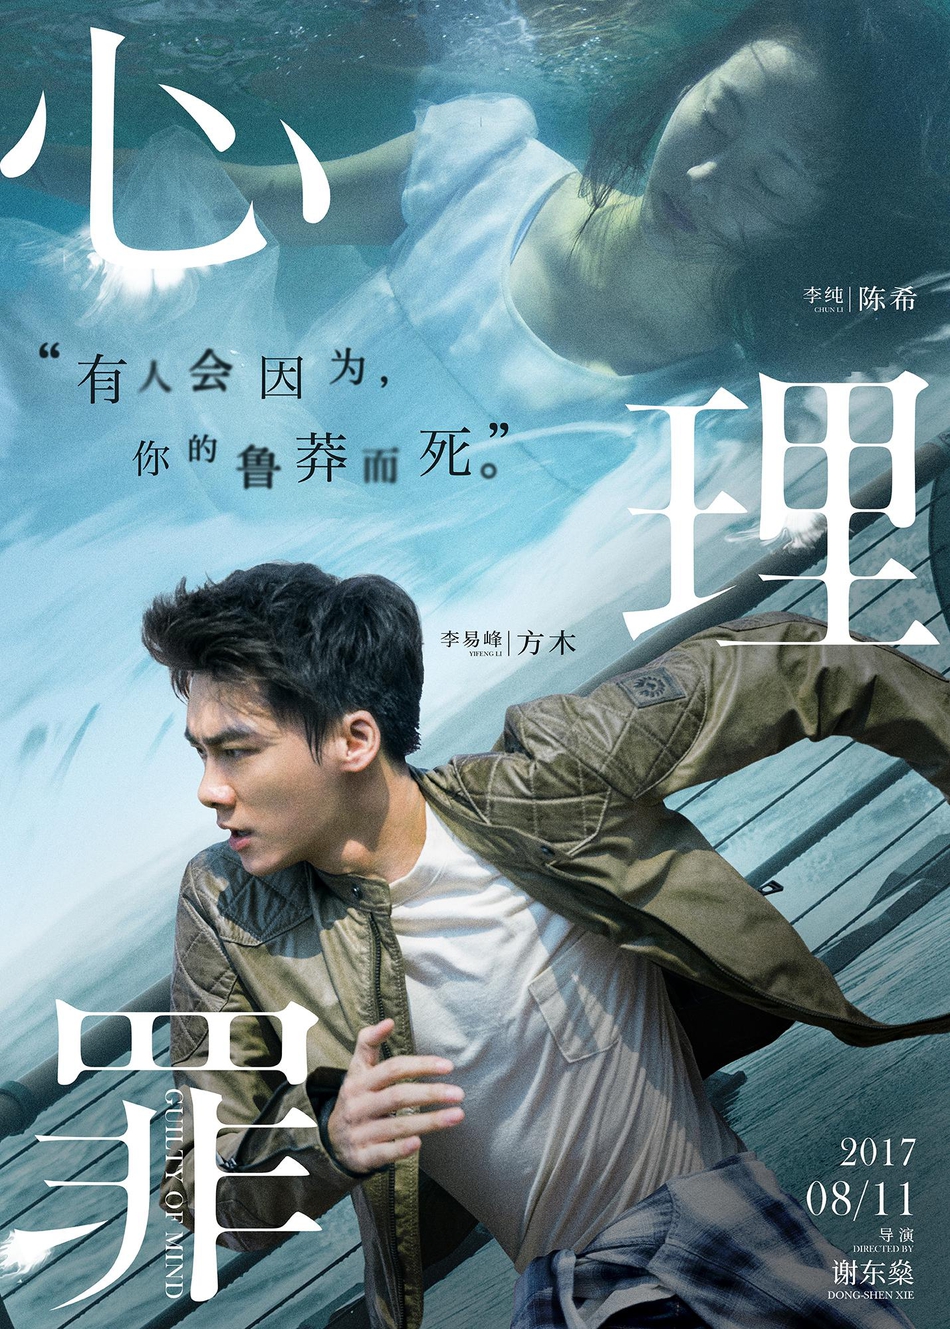 电影《心理罪》“侵心对决”主题海报-方木陈希